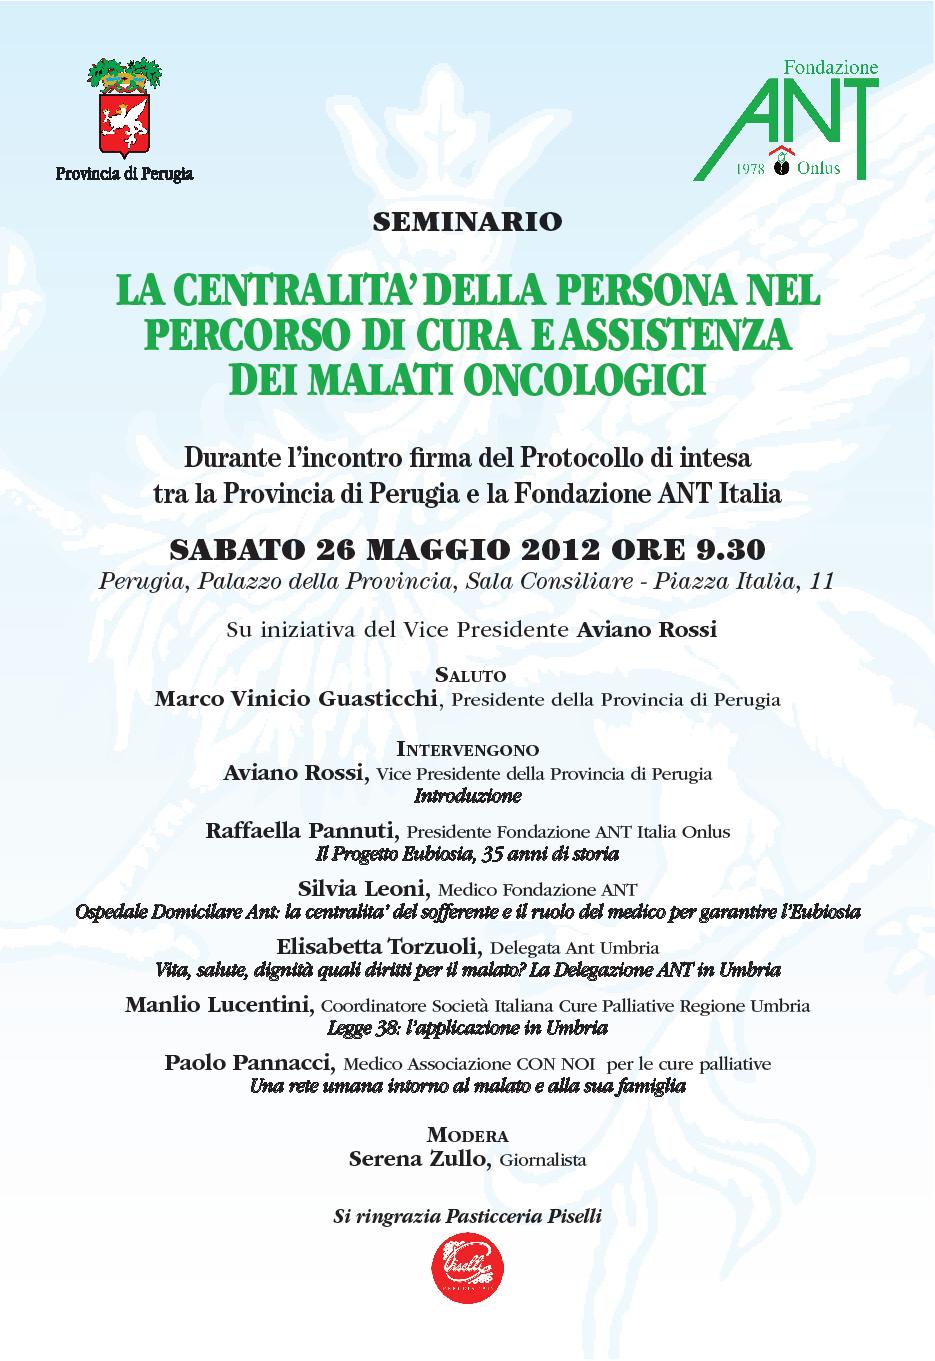 Perugia, Seminario &quot;La centralita’ della persona nel per corso di cura e assistenza dei malati oncologici&quot;